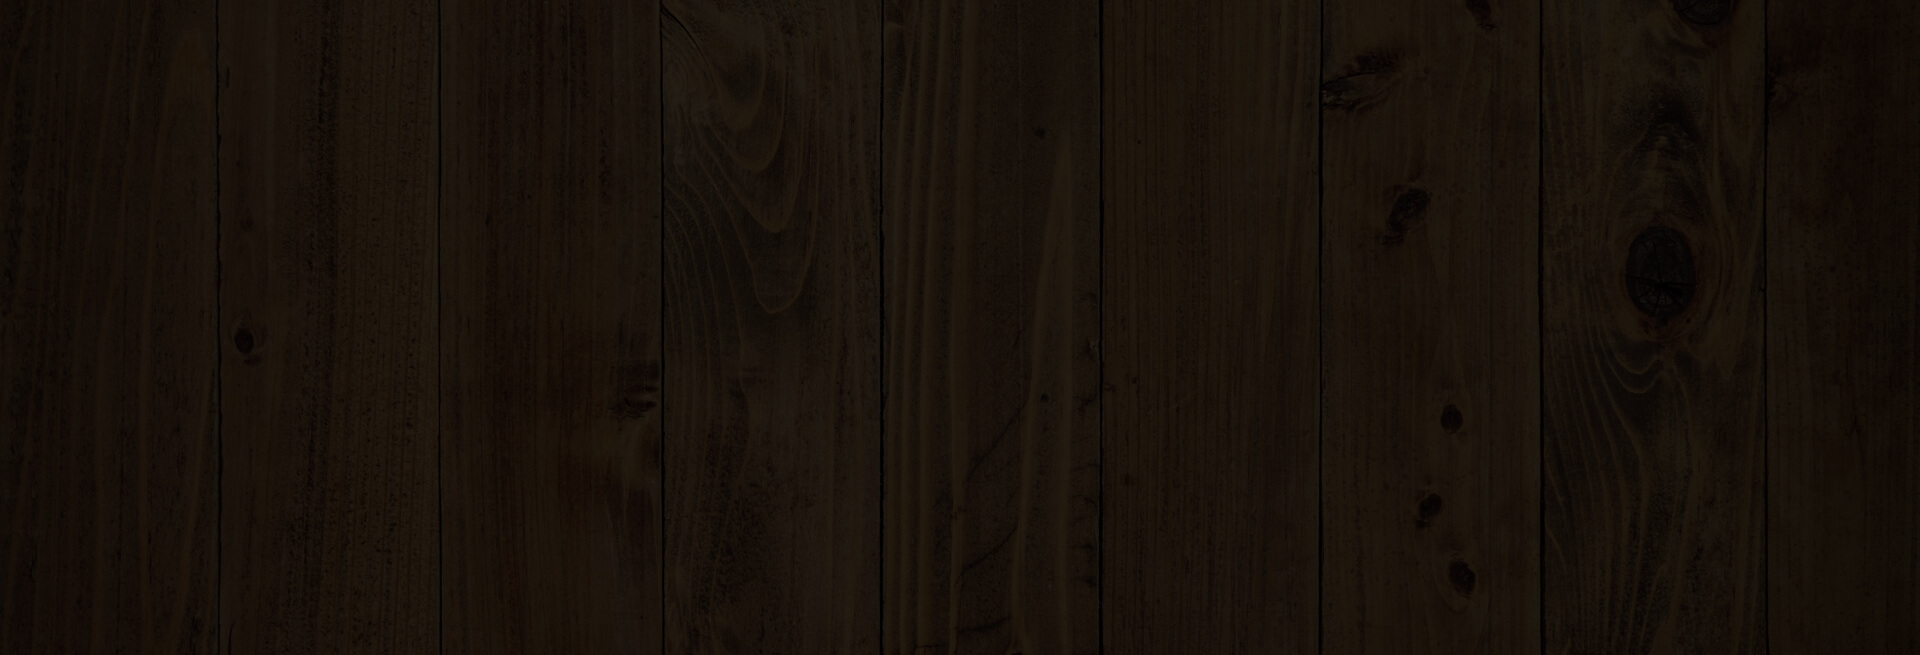 Zadaszenie na drewno, drewutnia  Dorota - 4x1m 